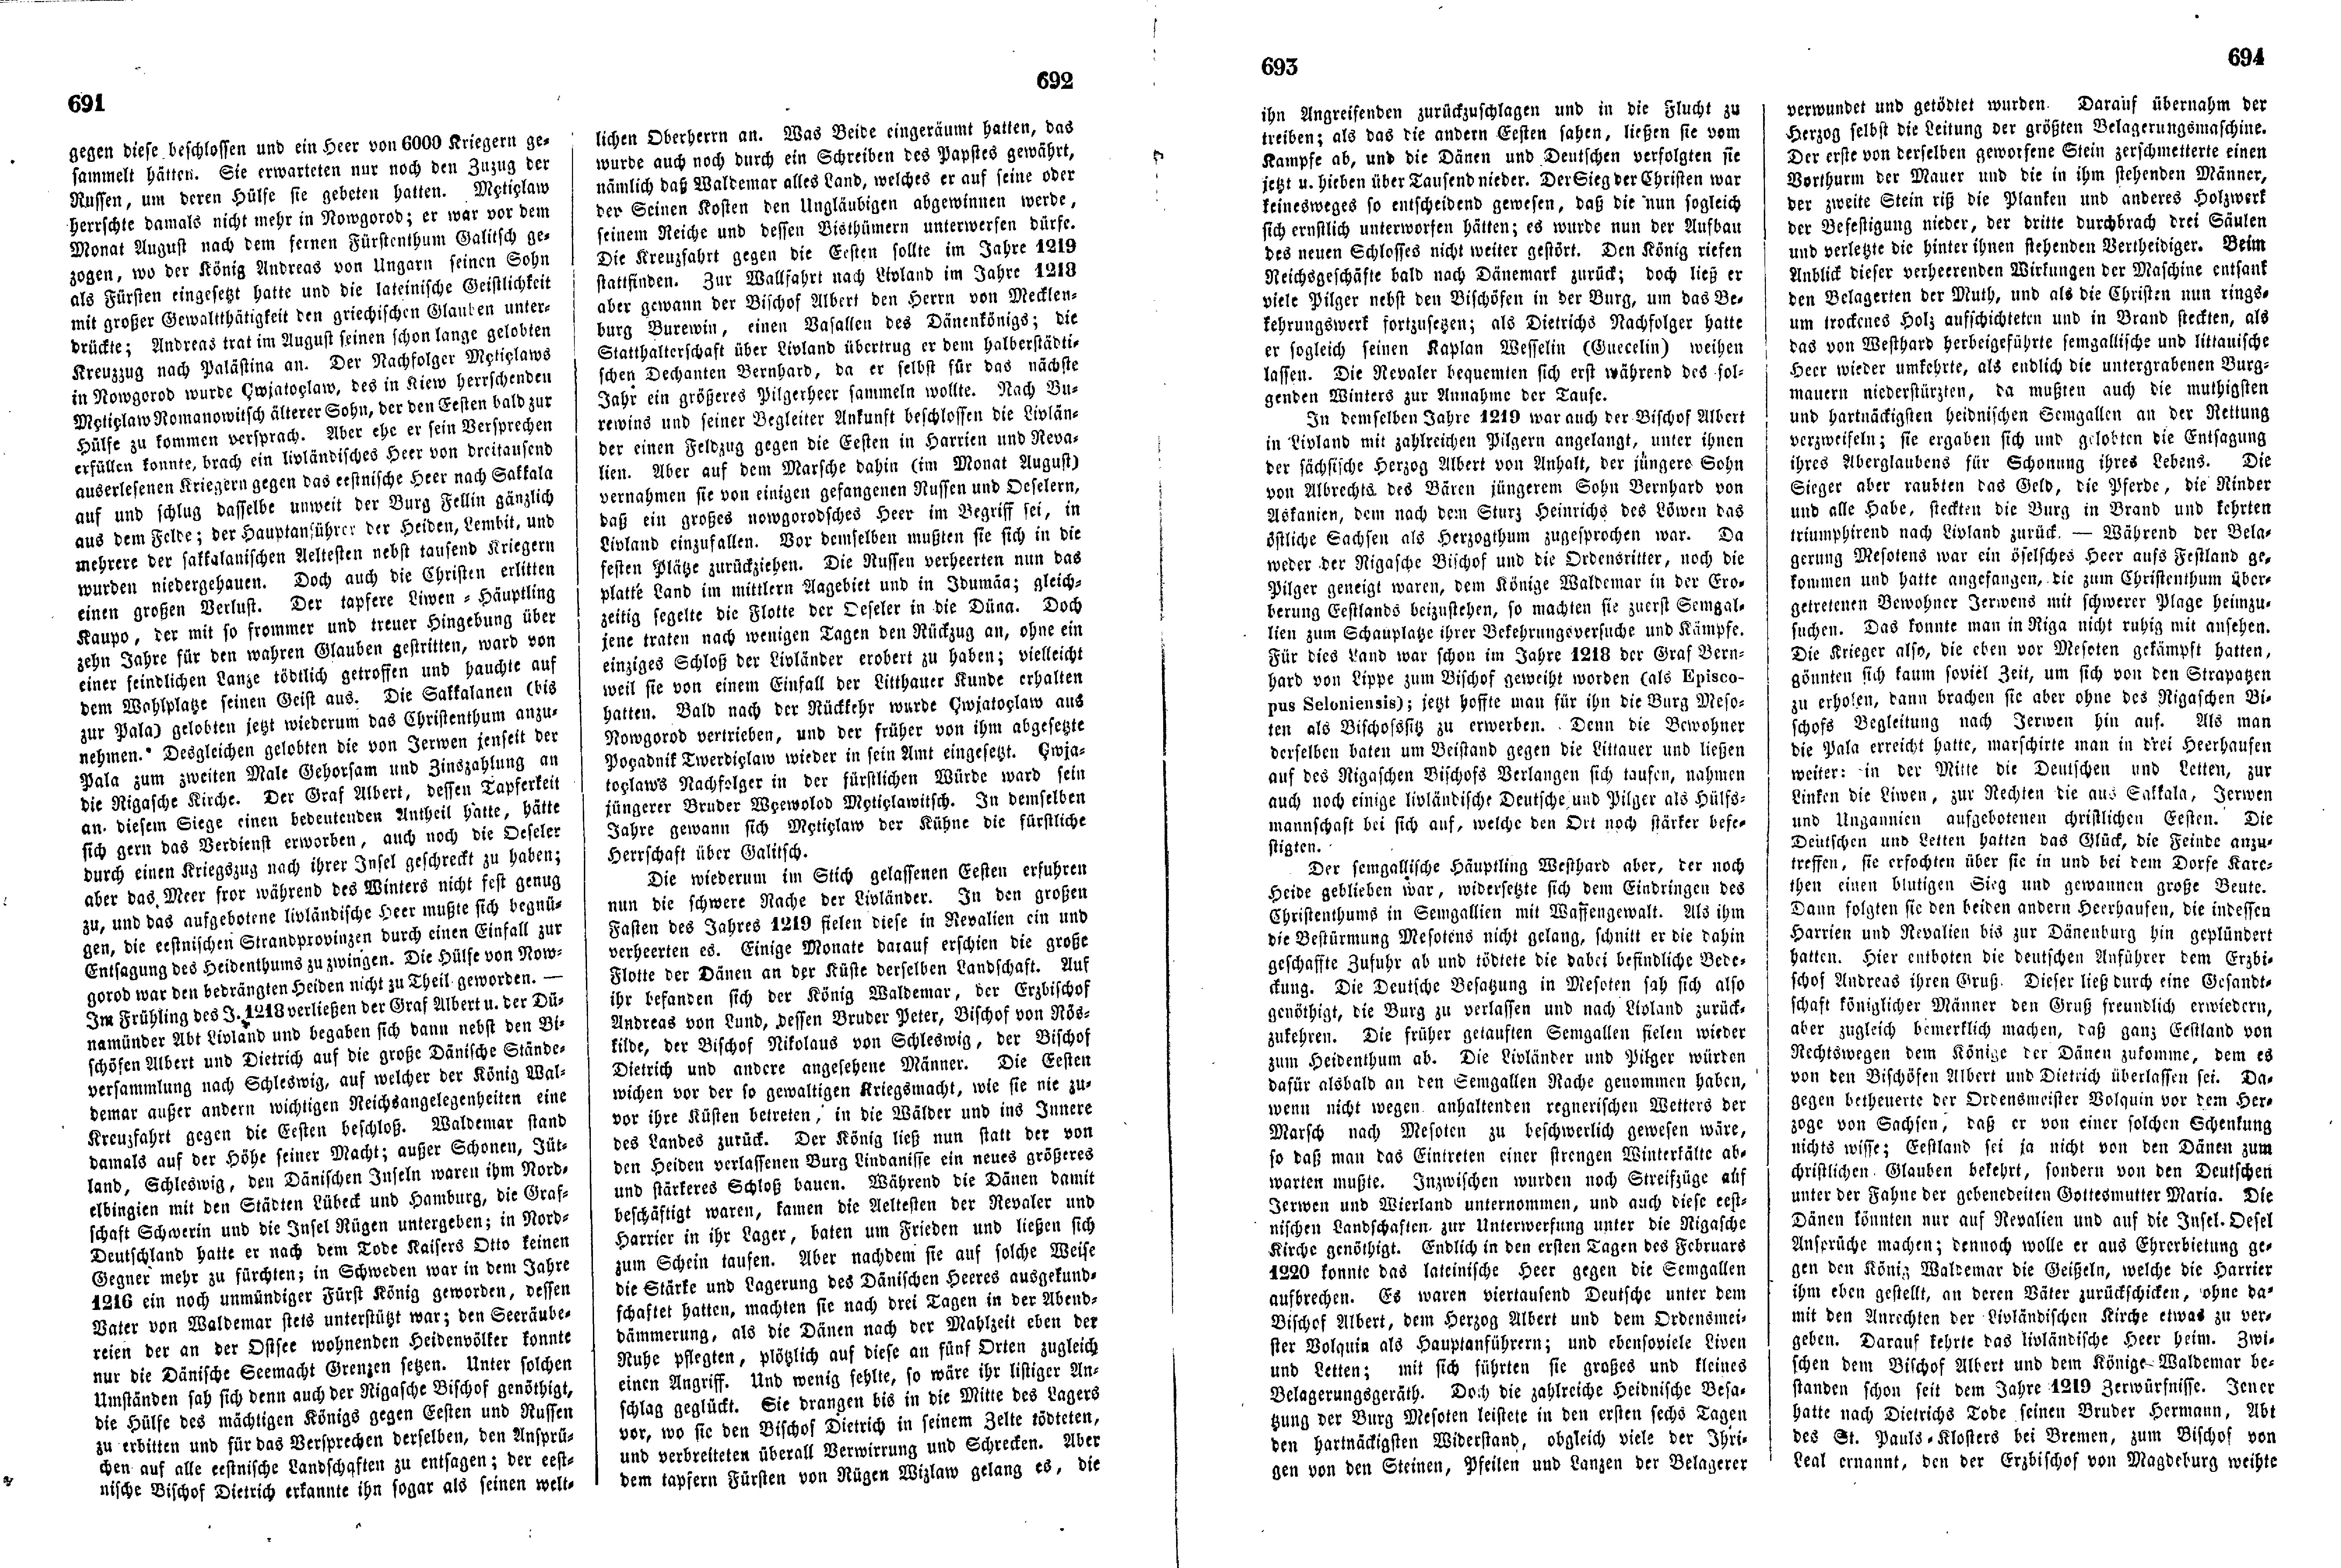 Das Inland [18] (1853) | 183. (691-694) Haupttext